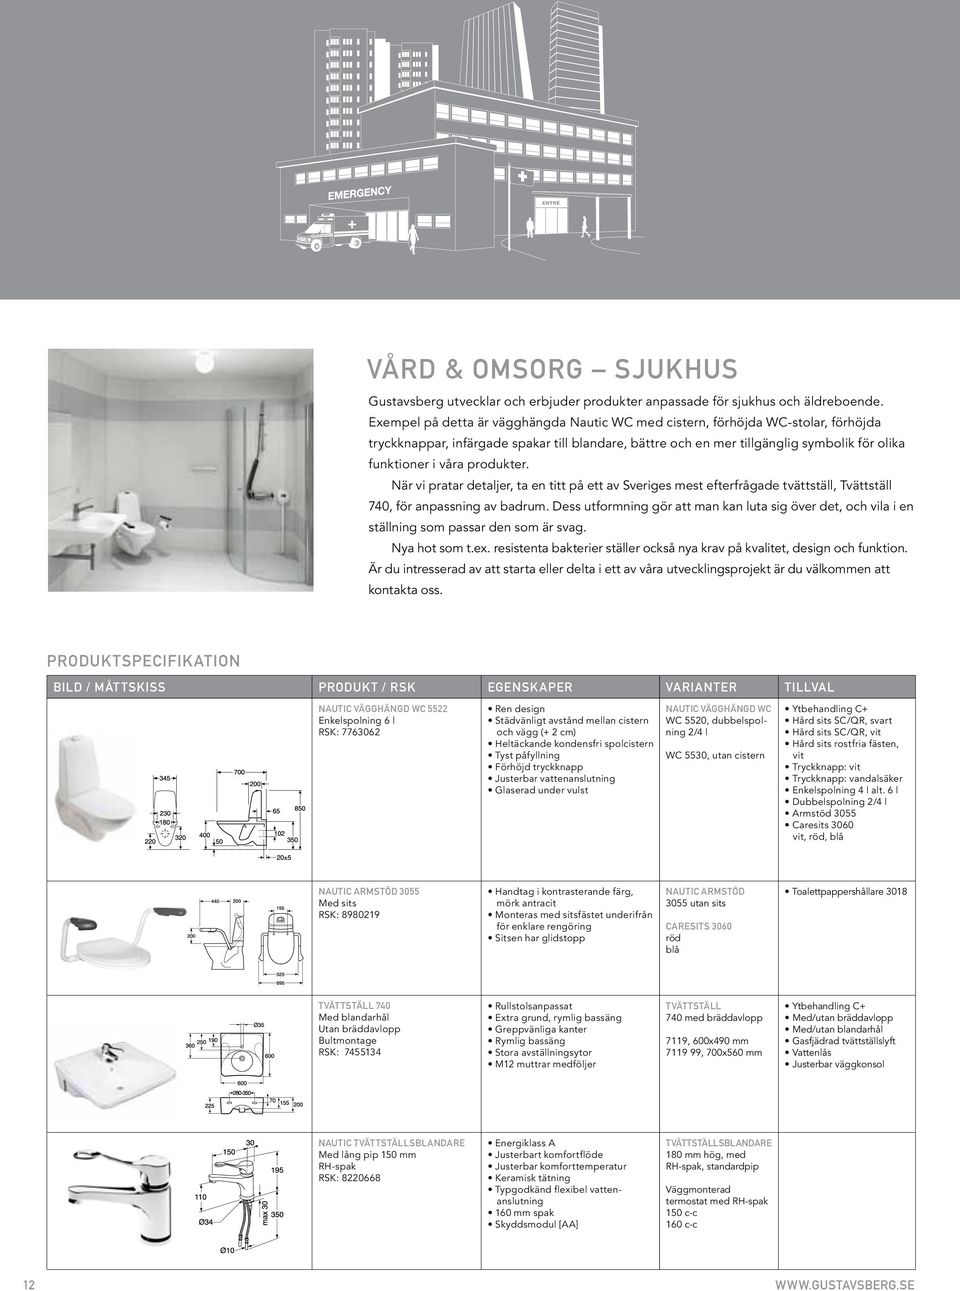 produkter. När vi pratar detaljer, ta en titt på ett av Sveriges mest efterfrågade tvättställ, Tvättställ 740, för anpassning av badrum.